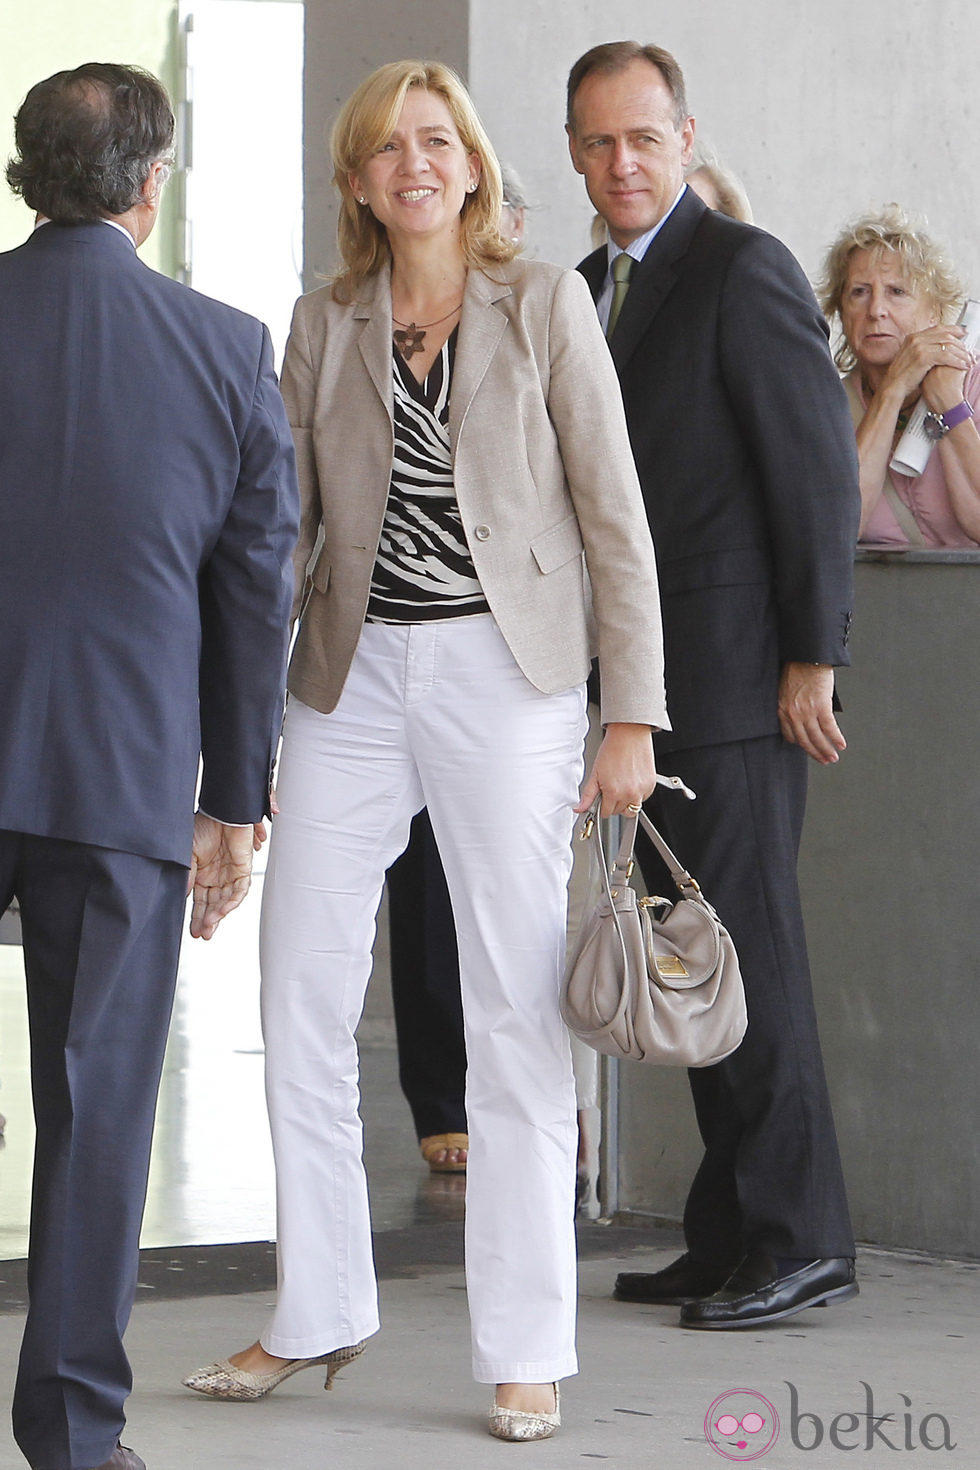 La Infanta Cristina visita al Rey tras su operación de cadera